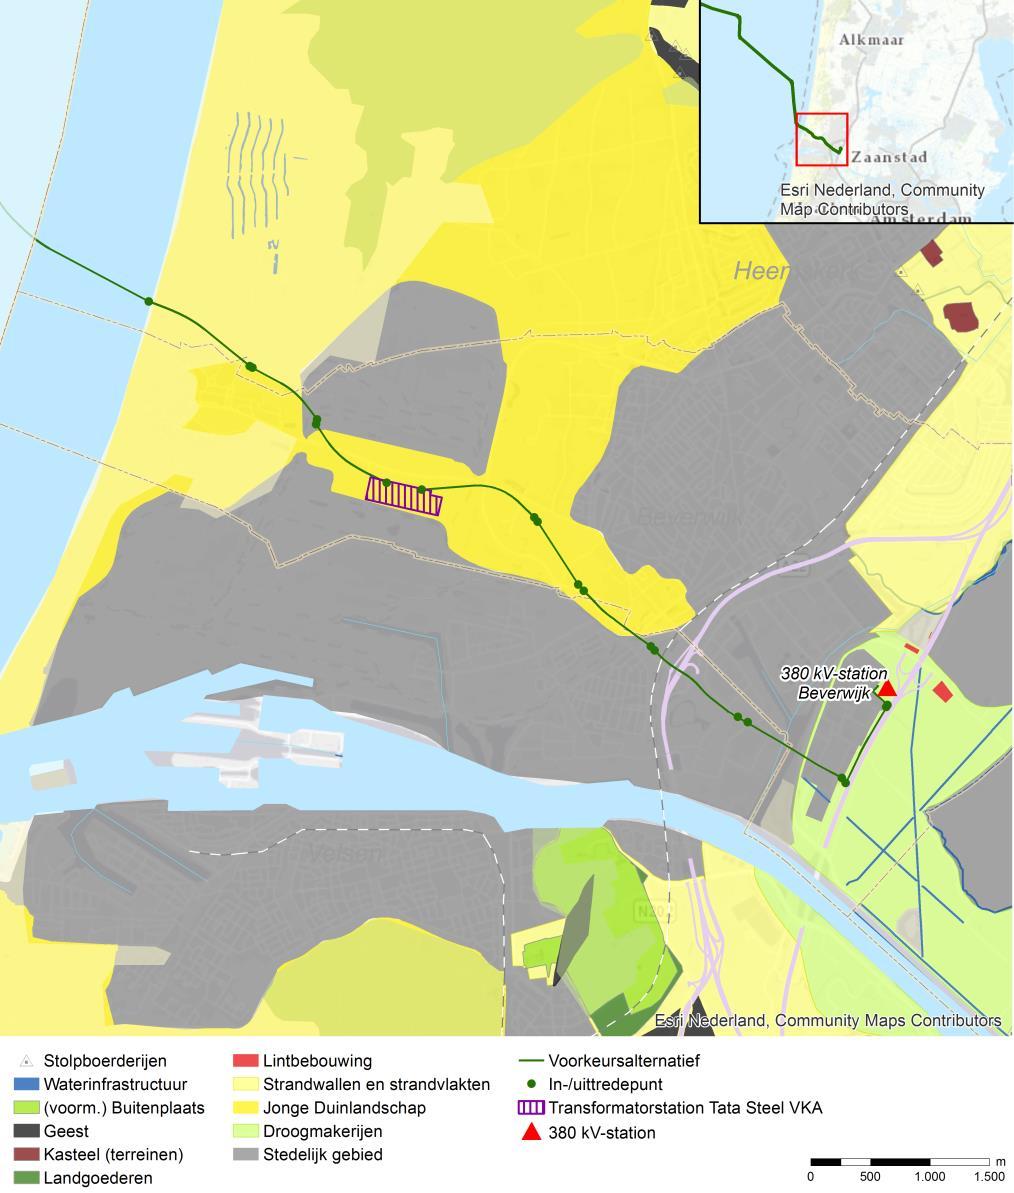 Vastgesteld Inpassingsplan Net op Zee Hollandse Kust (noord) en Hollandse Kust (west Alpha) duinen en open polders en de daarmee gepaard gaande contrasten, zijn belangrijk voor de identiteit van het